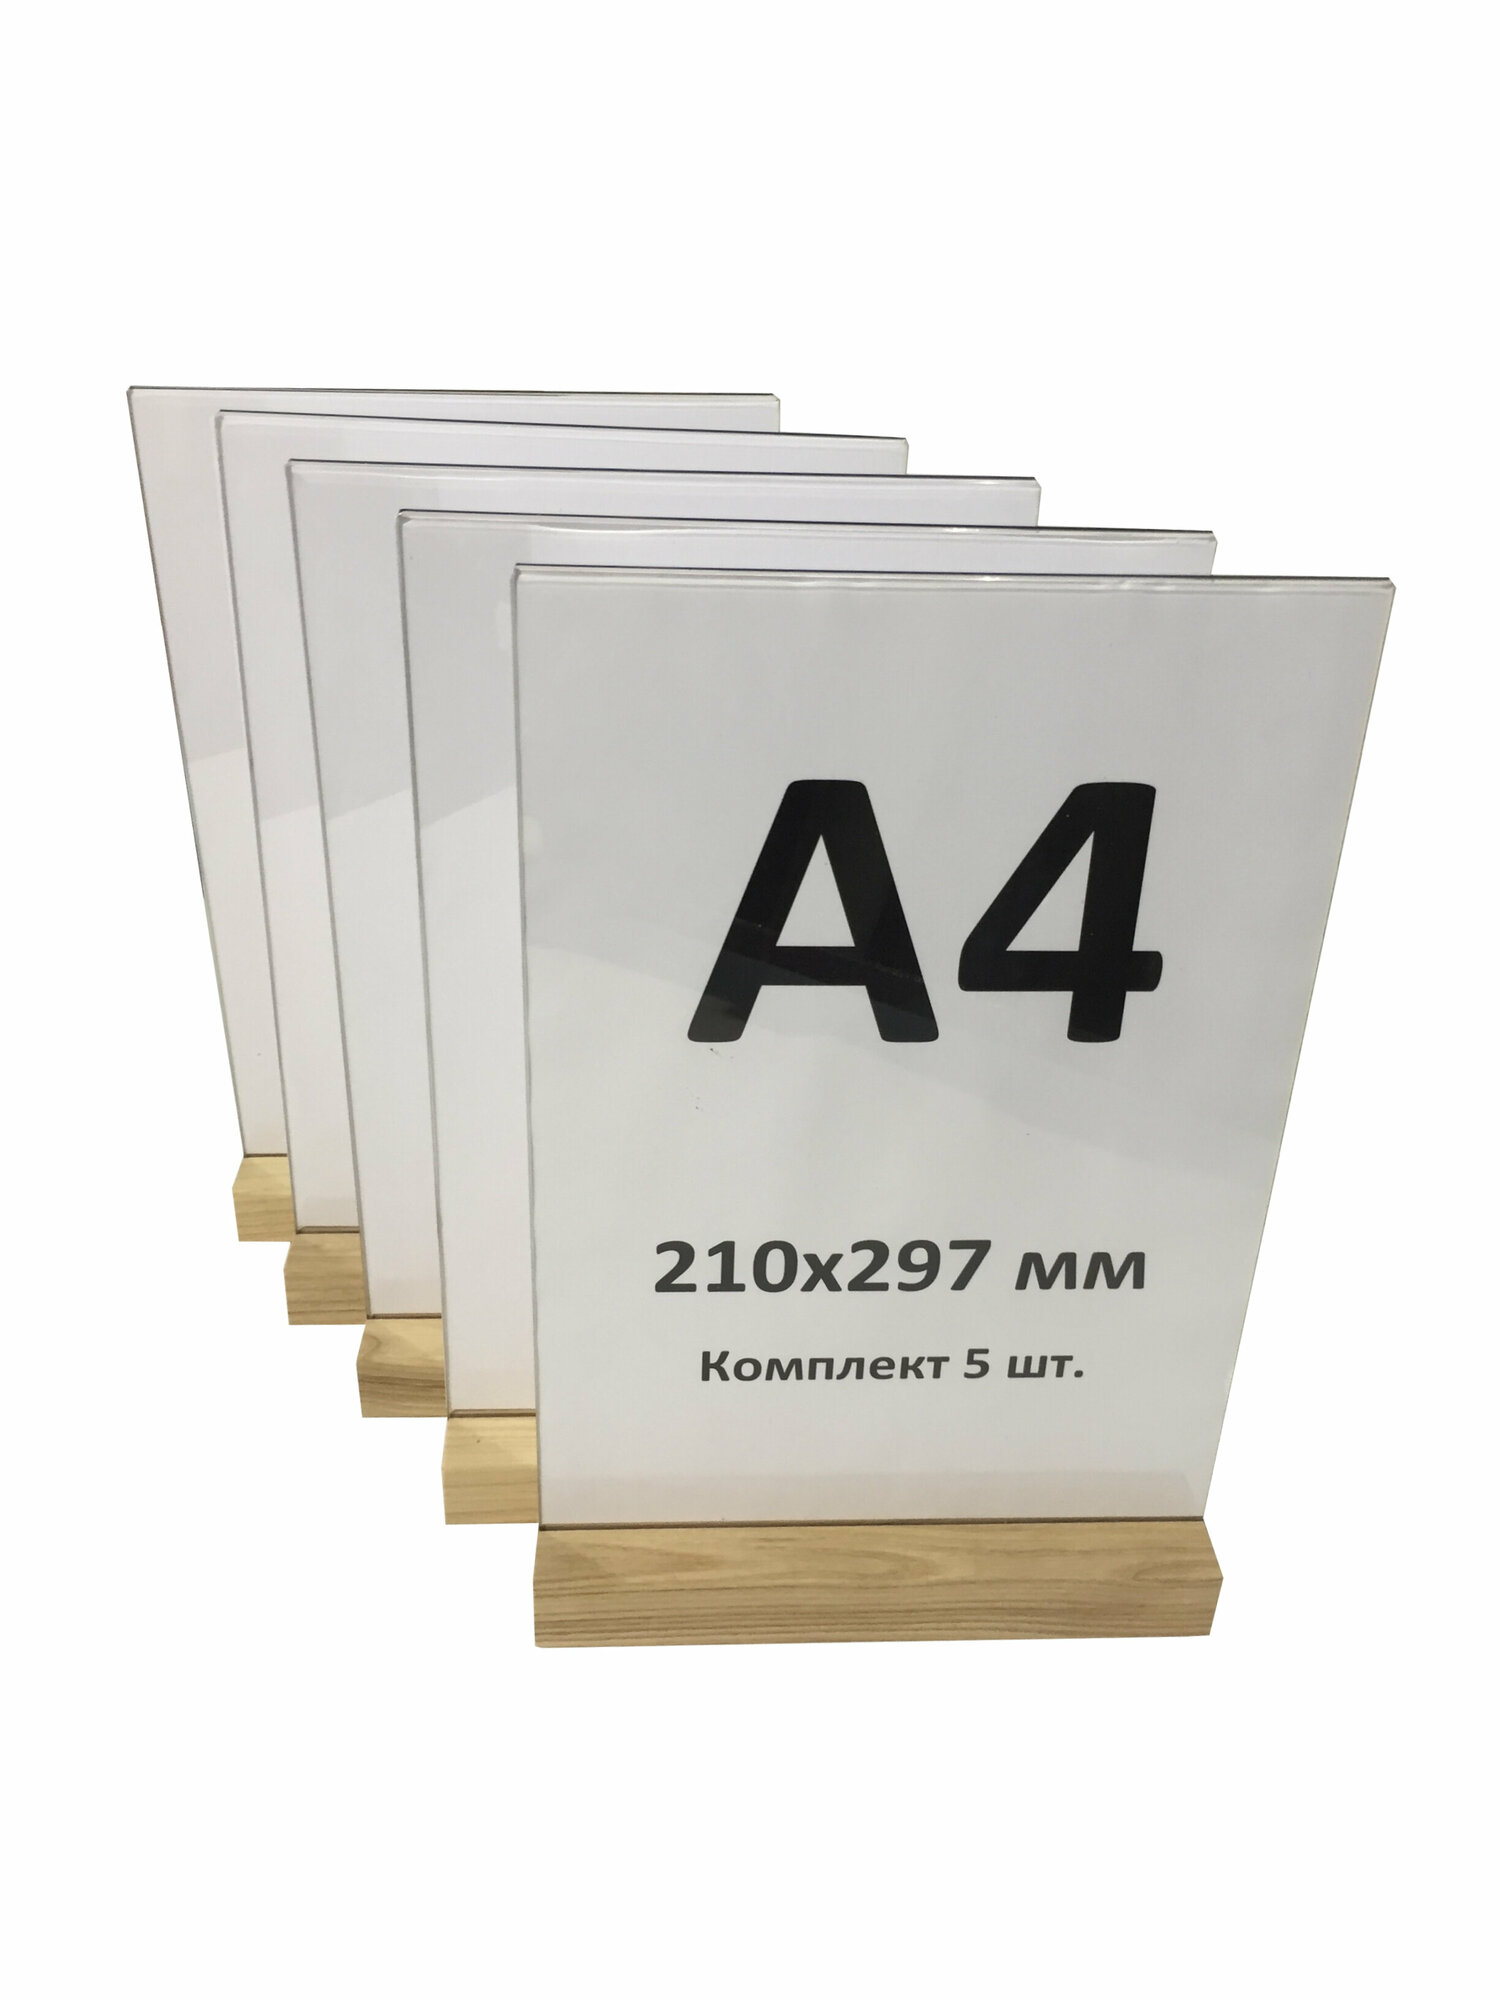 Менюхолдер А4 на деревянном основании , комплект 5 штук / Подставка под меню настольная вертикальная для рекламных материалов